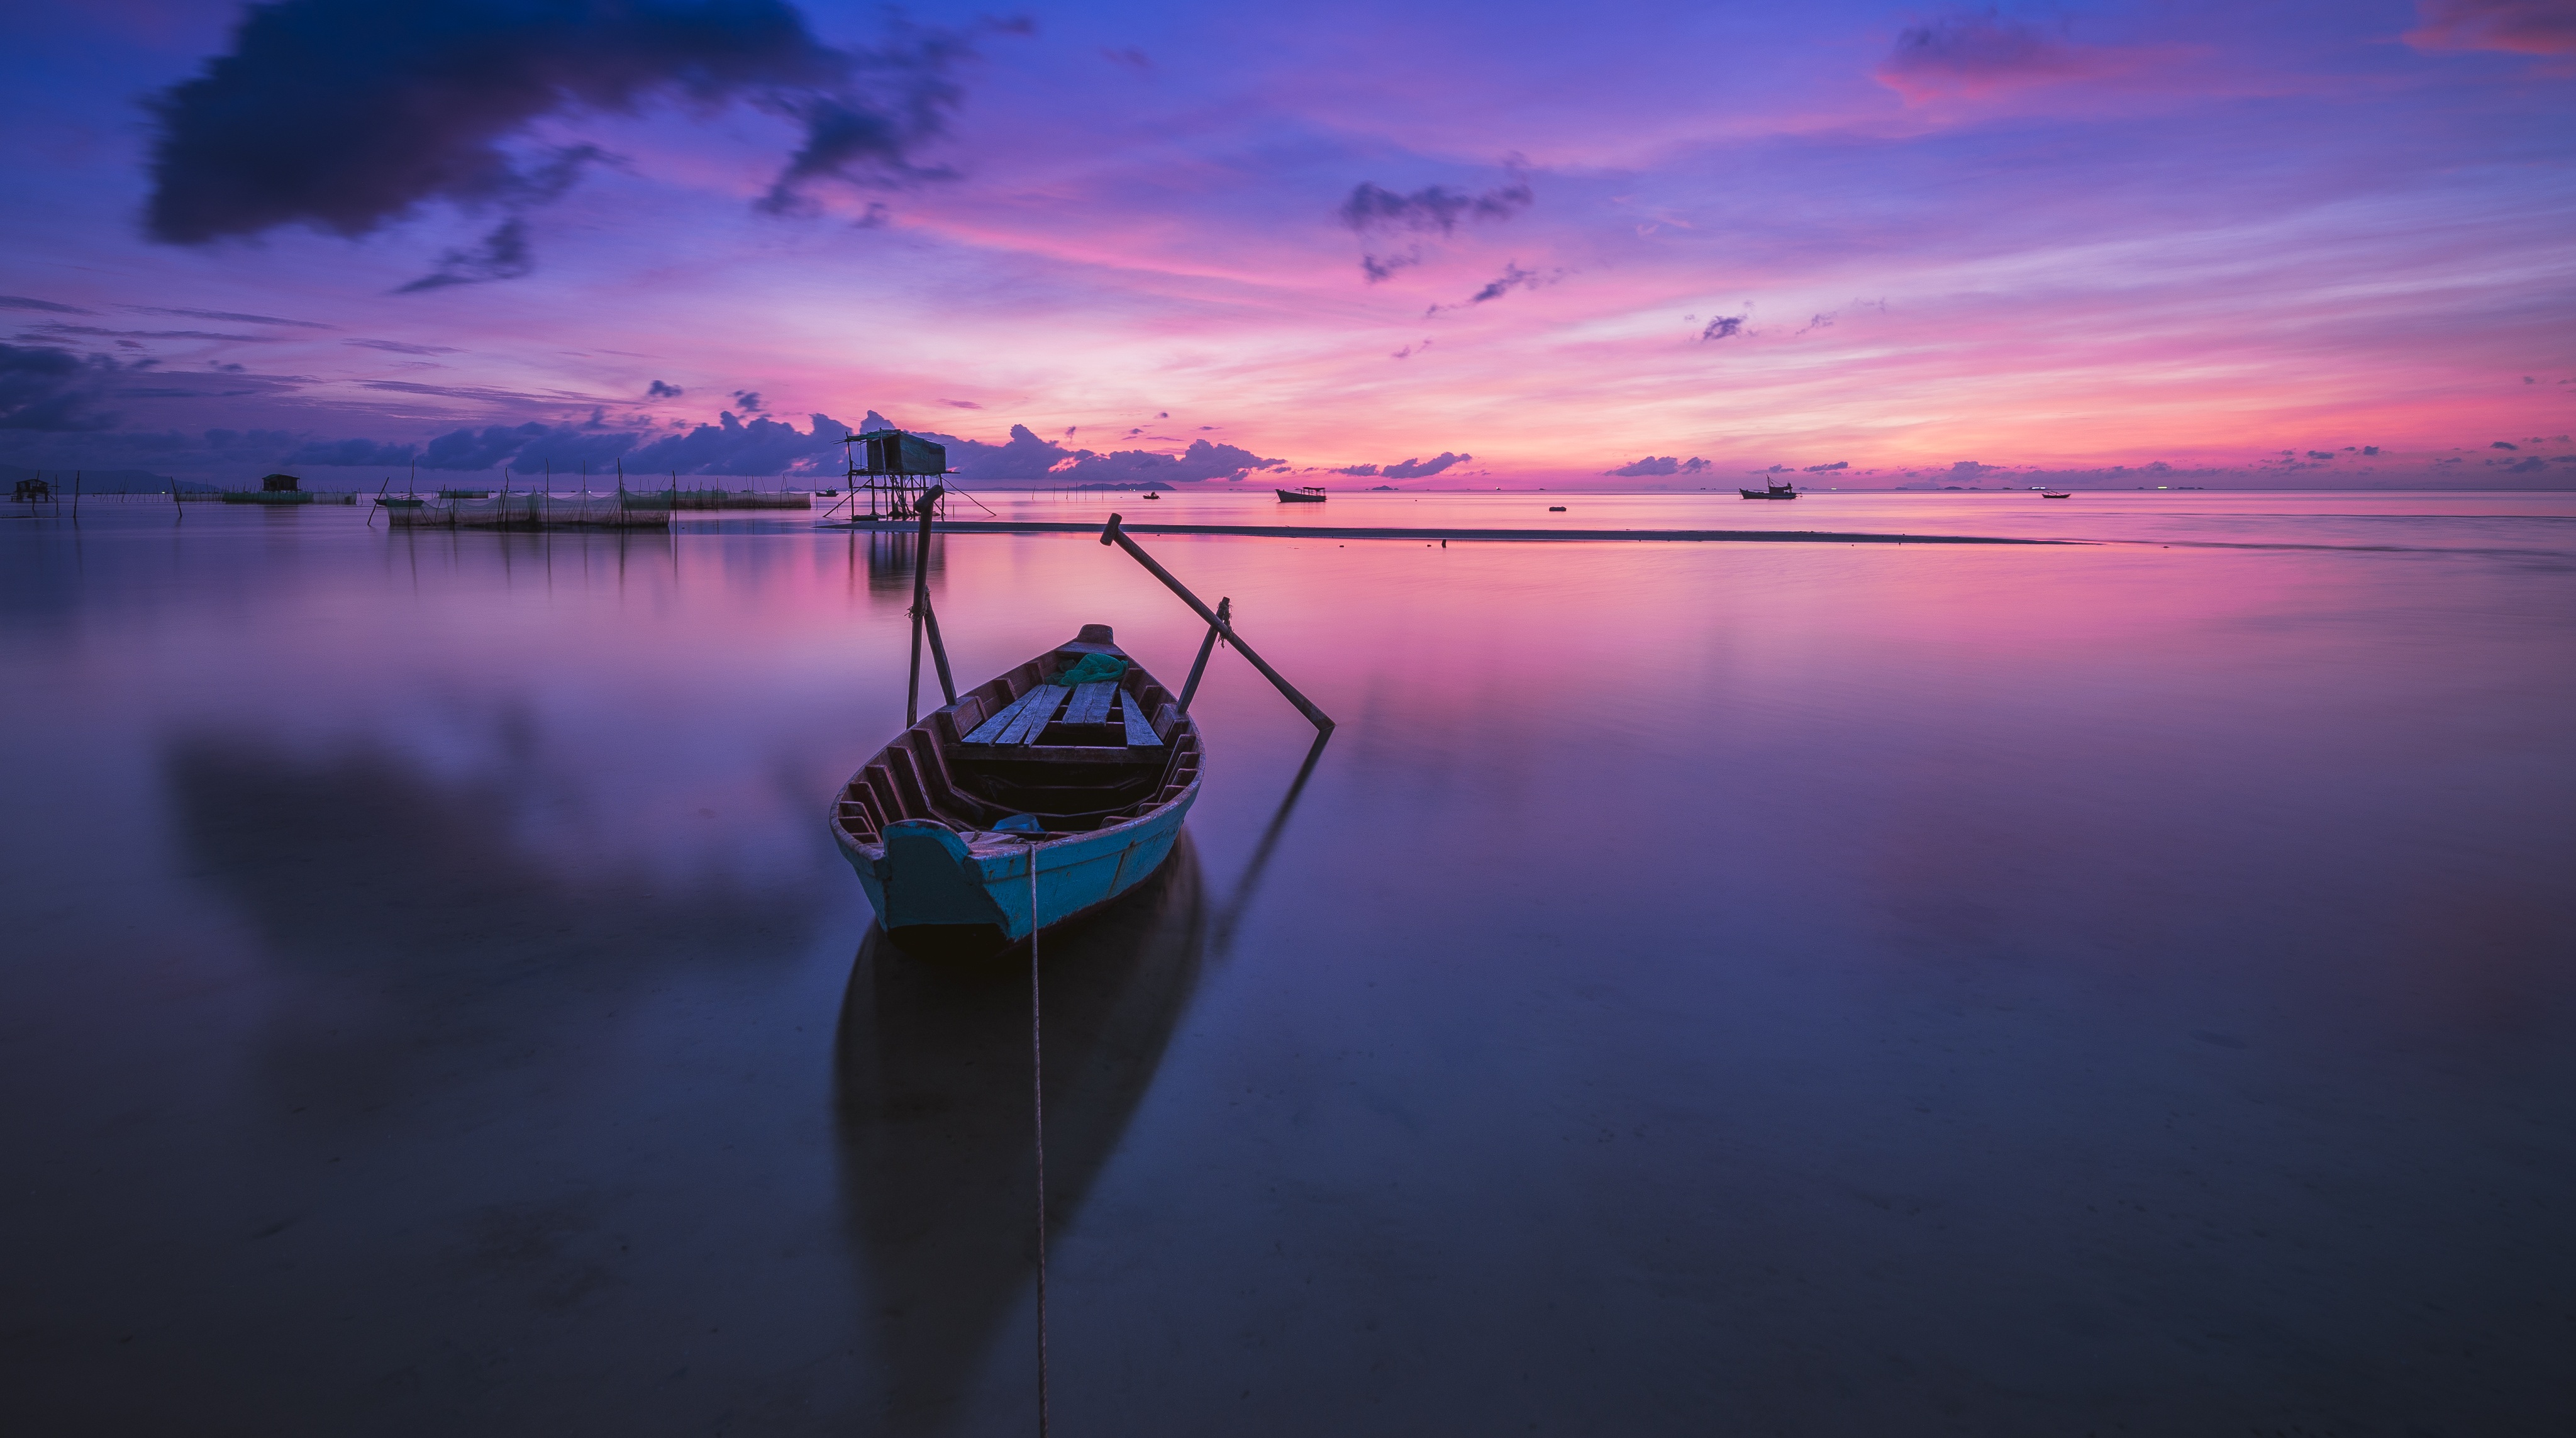 Бесплатное фото Лодка на озере с фиолетовым закатом